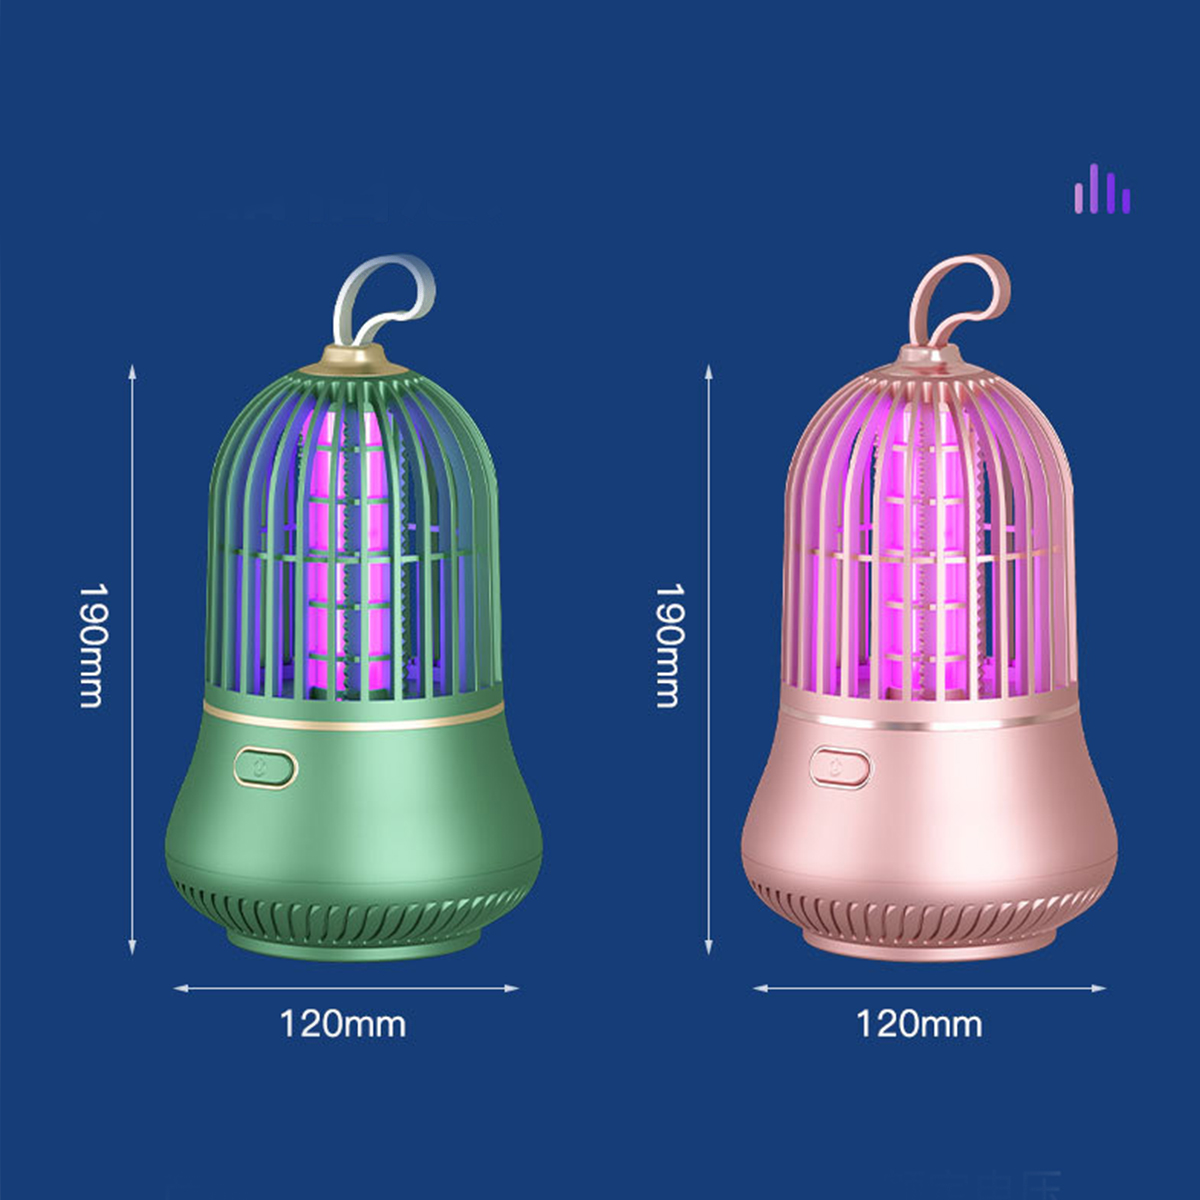 BRIGHTAKE USB-LED Moskito Killer Lampe für und Schädlingsbekämpfung leise effektive Insektenvernichter